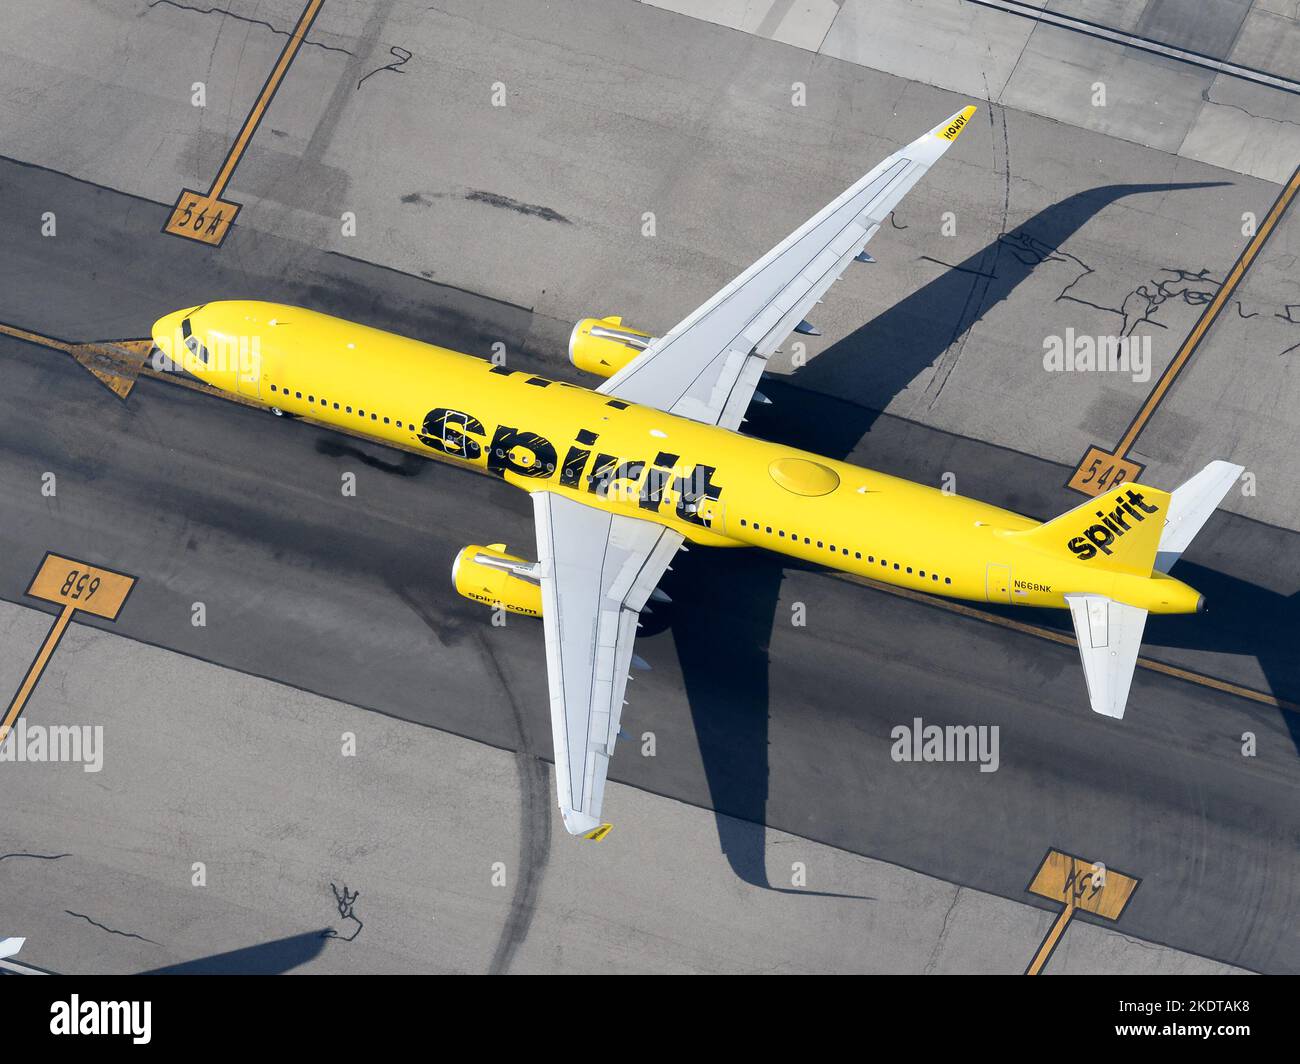 Aereo Spirit Airlines Airbus A321. Velivolo in livrea gialla di compagnia aerea a basso costo negli Stati Uniti. Spirirt Airlines Airbus A321 aereo di N668NK reg. Foto Stock